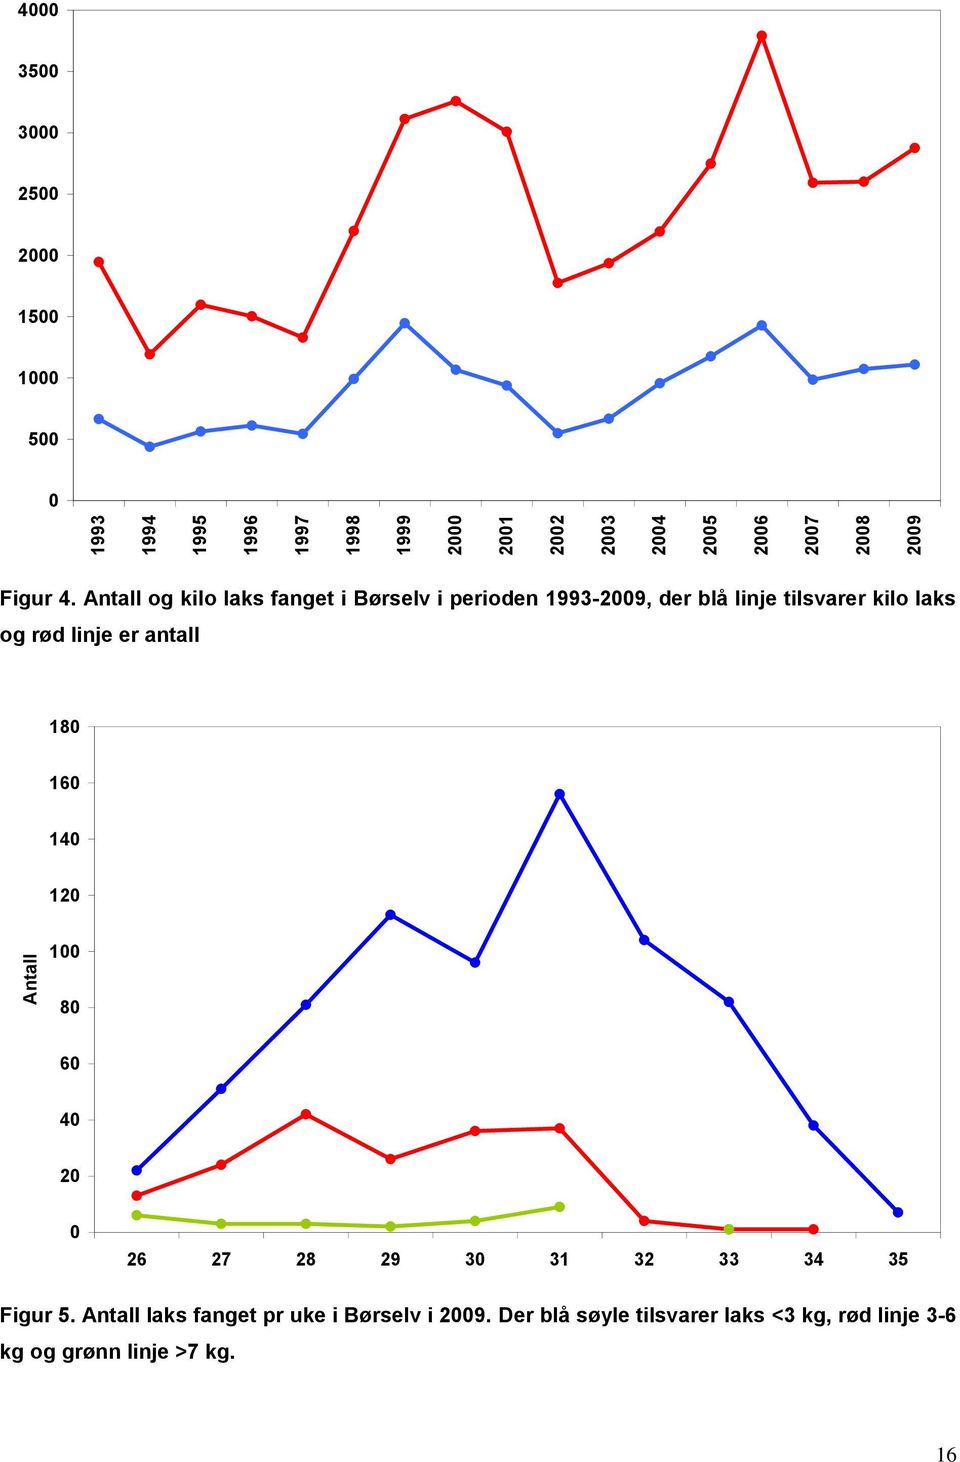 Antall og kilo laks fanget i Børselv i perioden 1993-2009, der blå linje tilsvarer kilo laks og rød linje er